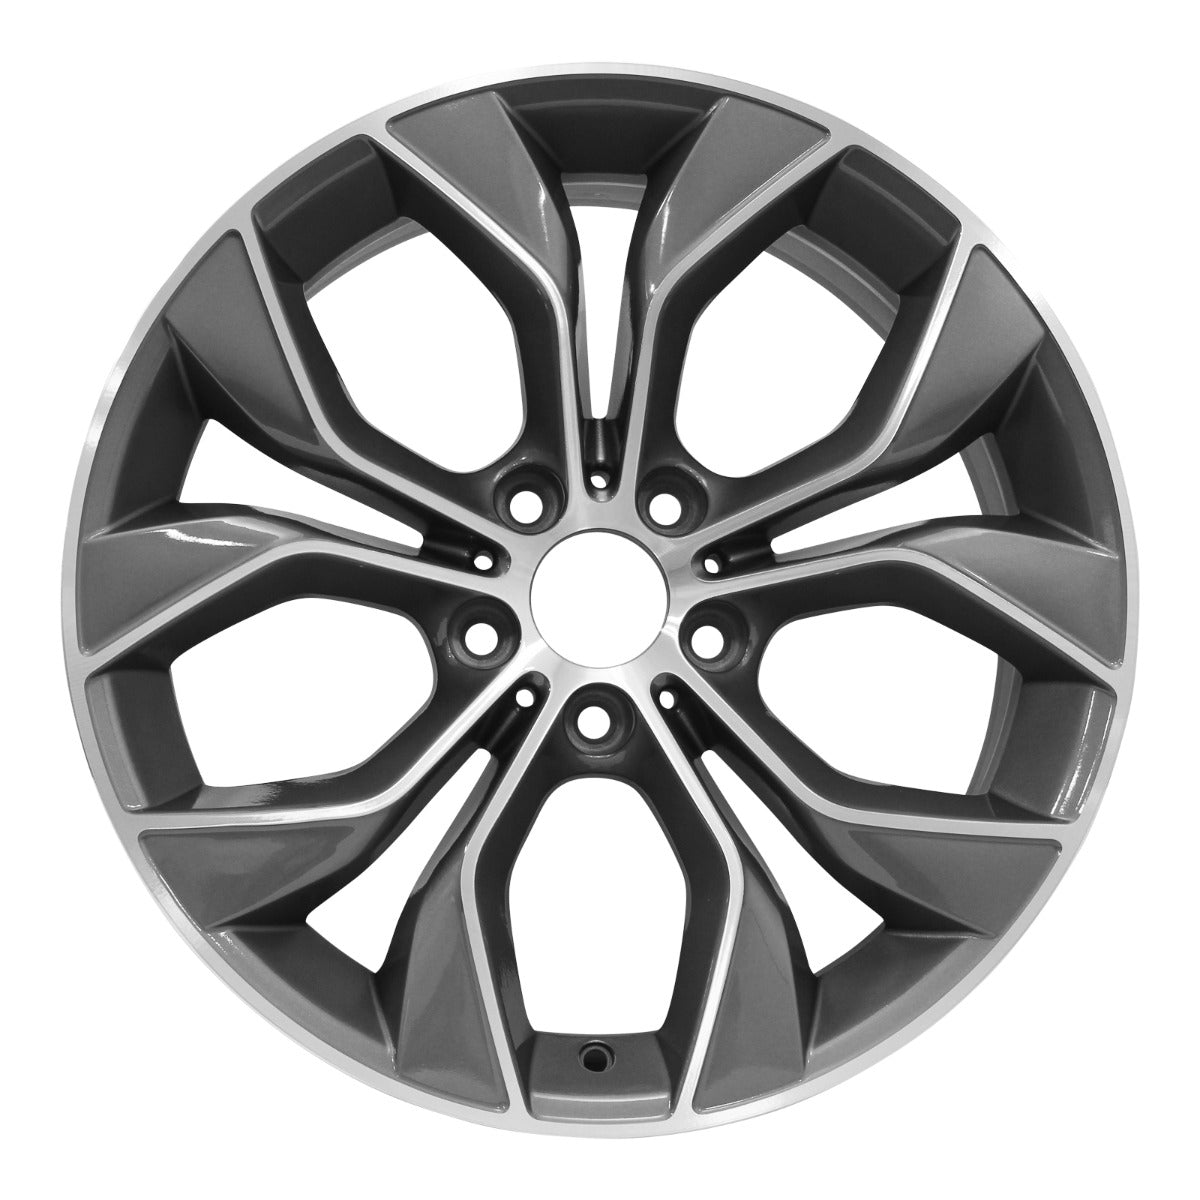 2016 BMW X3 19" Front OEM Wheel Rim Style 608 W86103MC